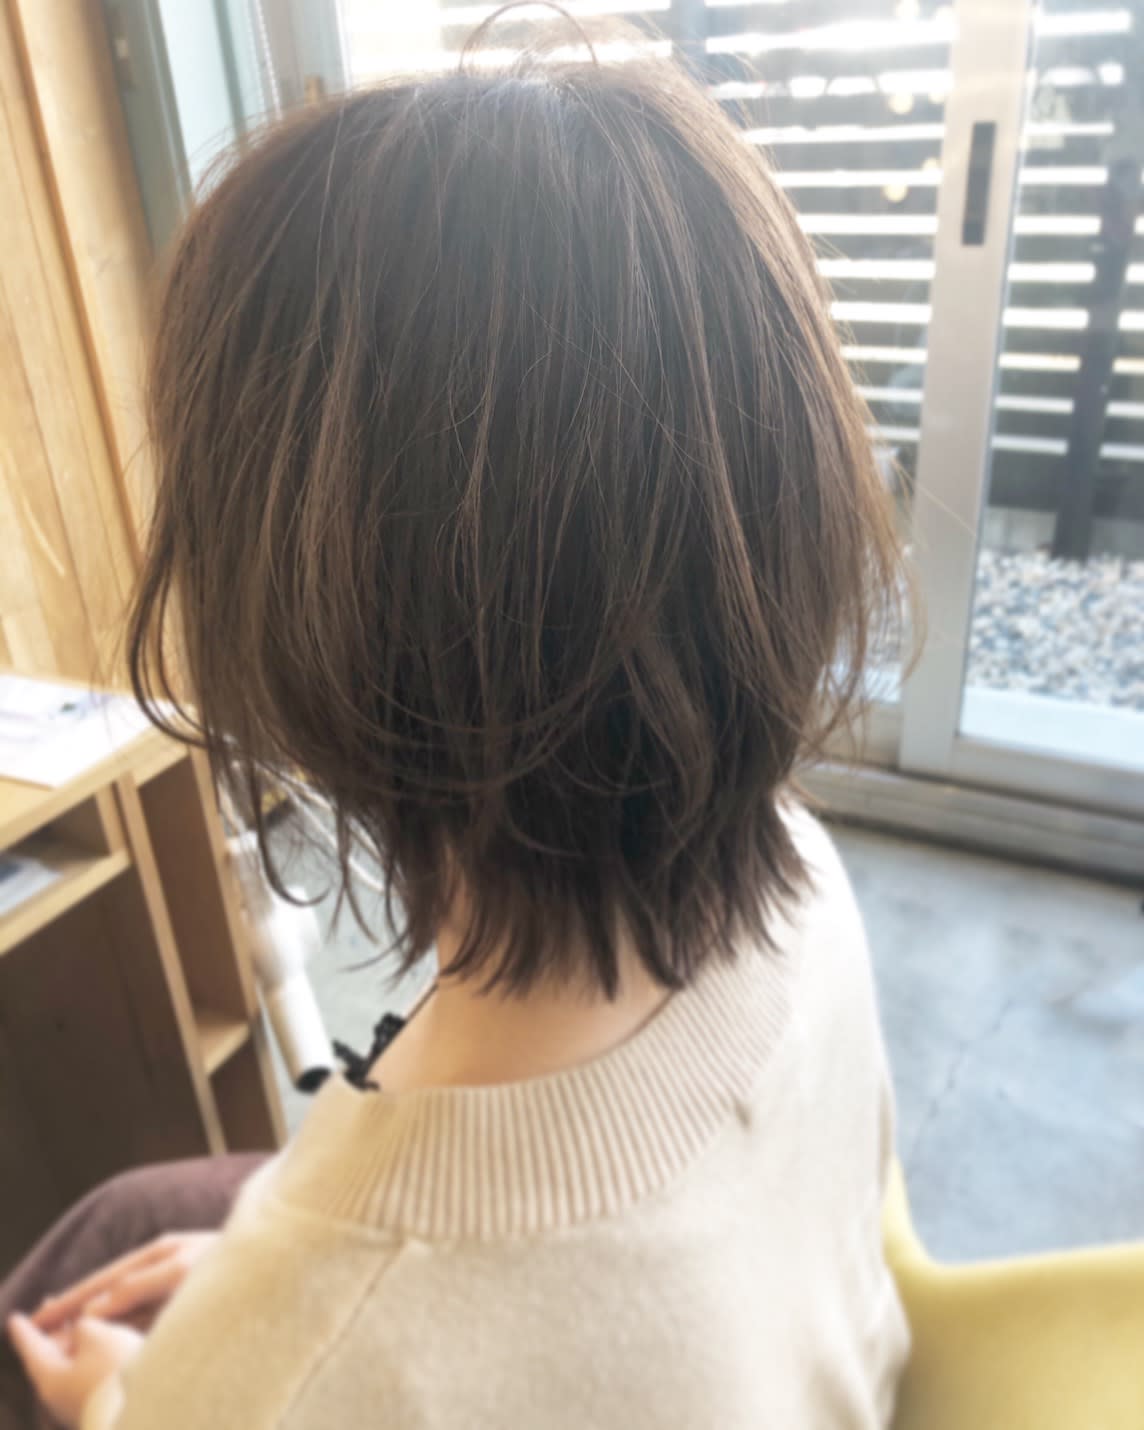 hair lounge ungu【ヘアーラウンジアングゥ】のスタイル紹介。ネオウルフ